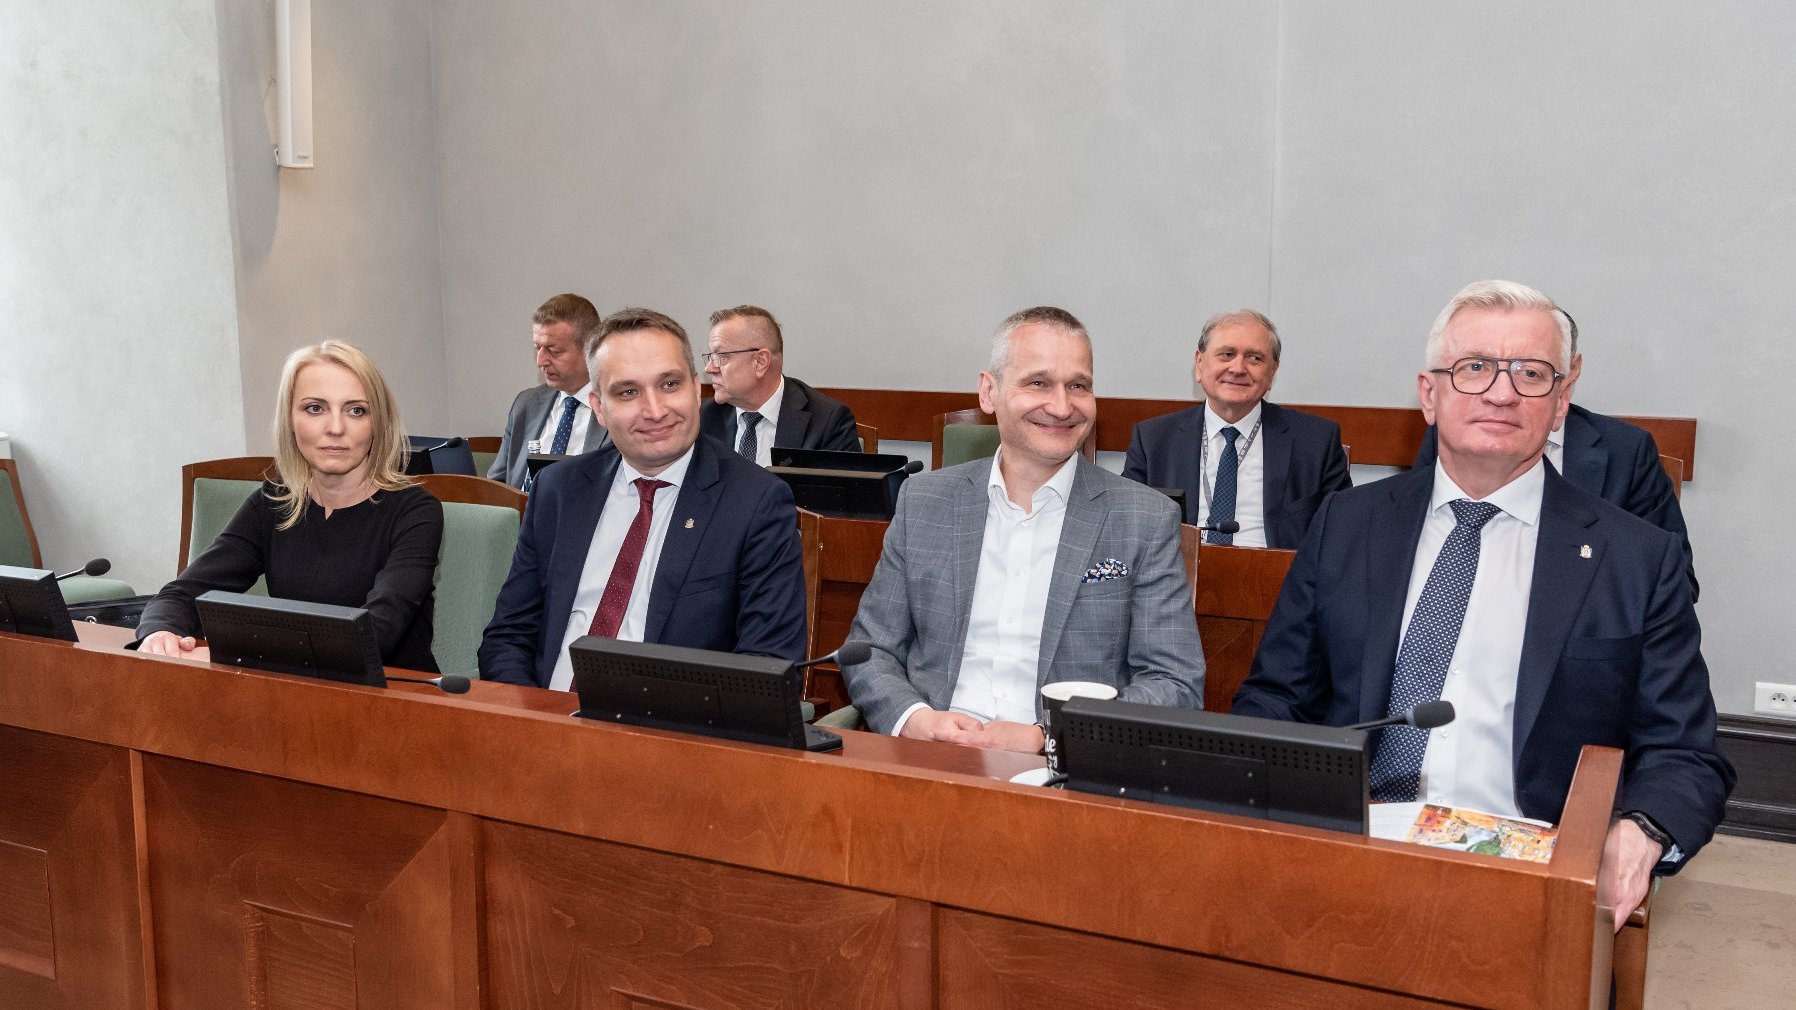 Na zdjęciu prezydent Poznania i jego zastępcy w ławie sali sesyjnej